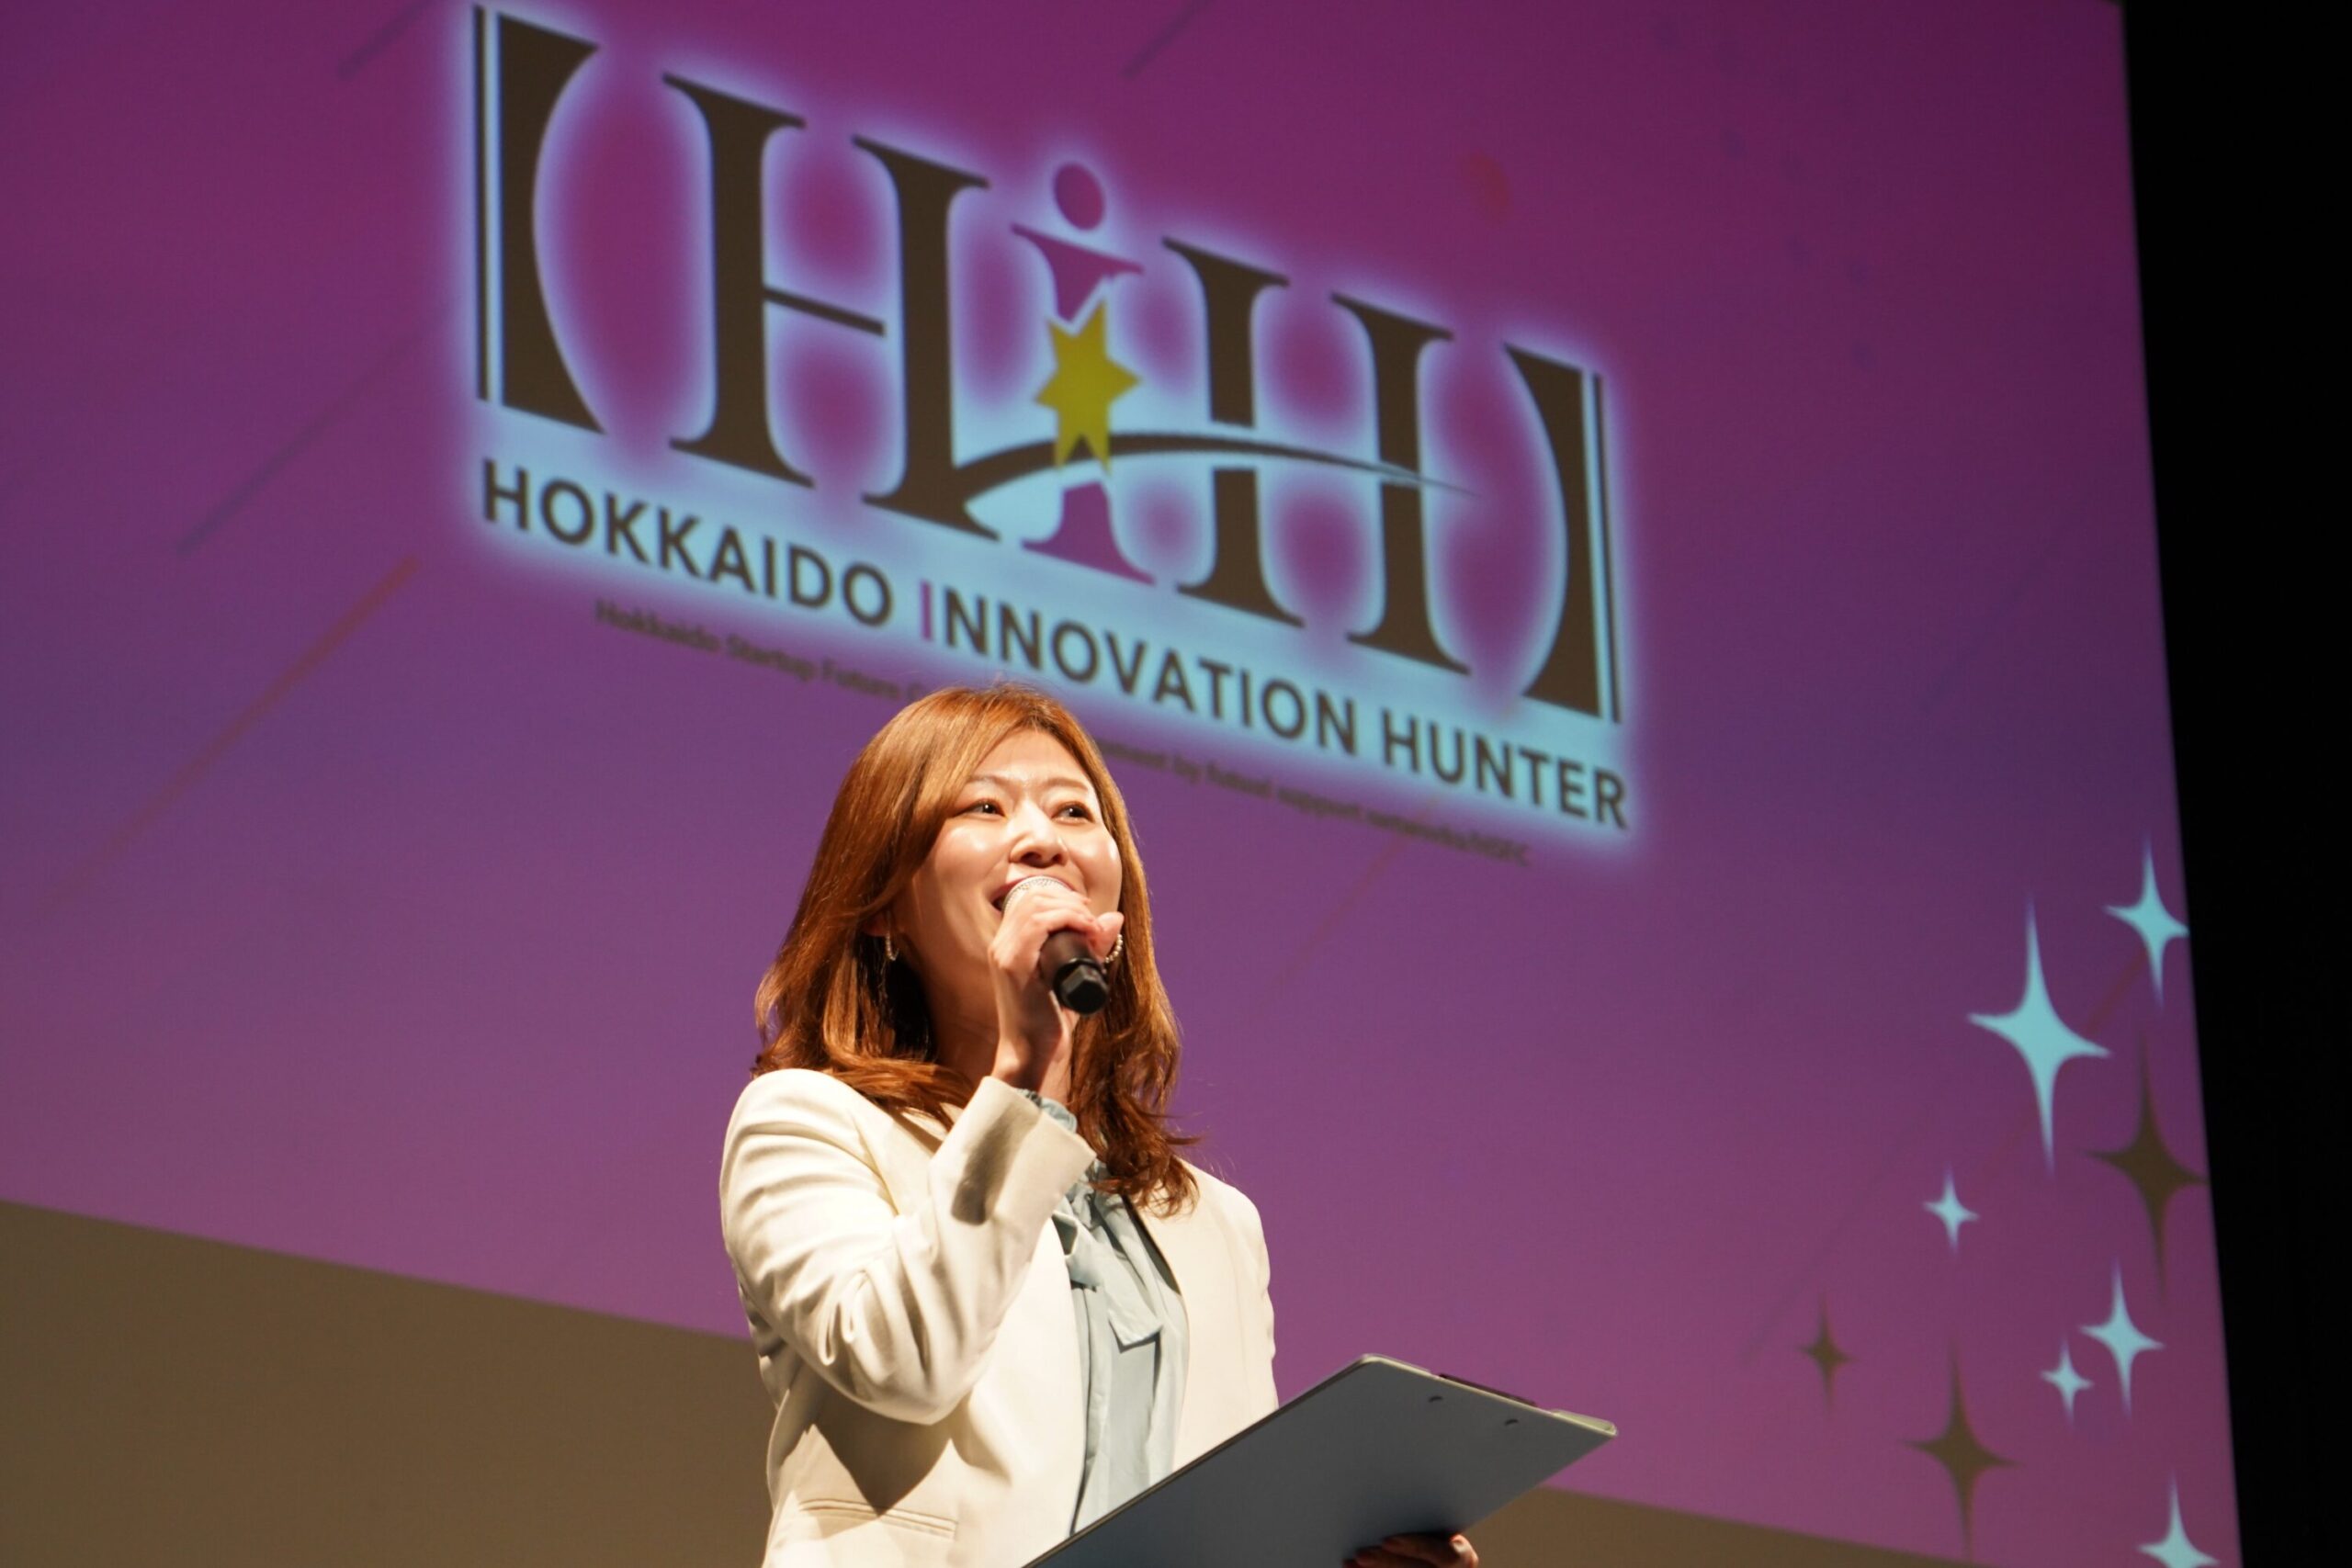 北海道大学主催「Hokkaido Innovation Hunter」にて国井美佐が司会を務めました。